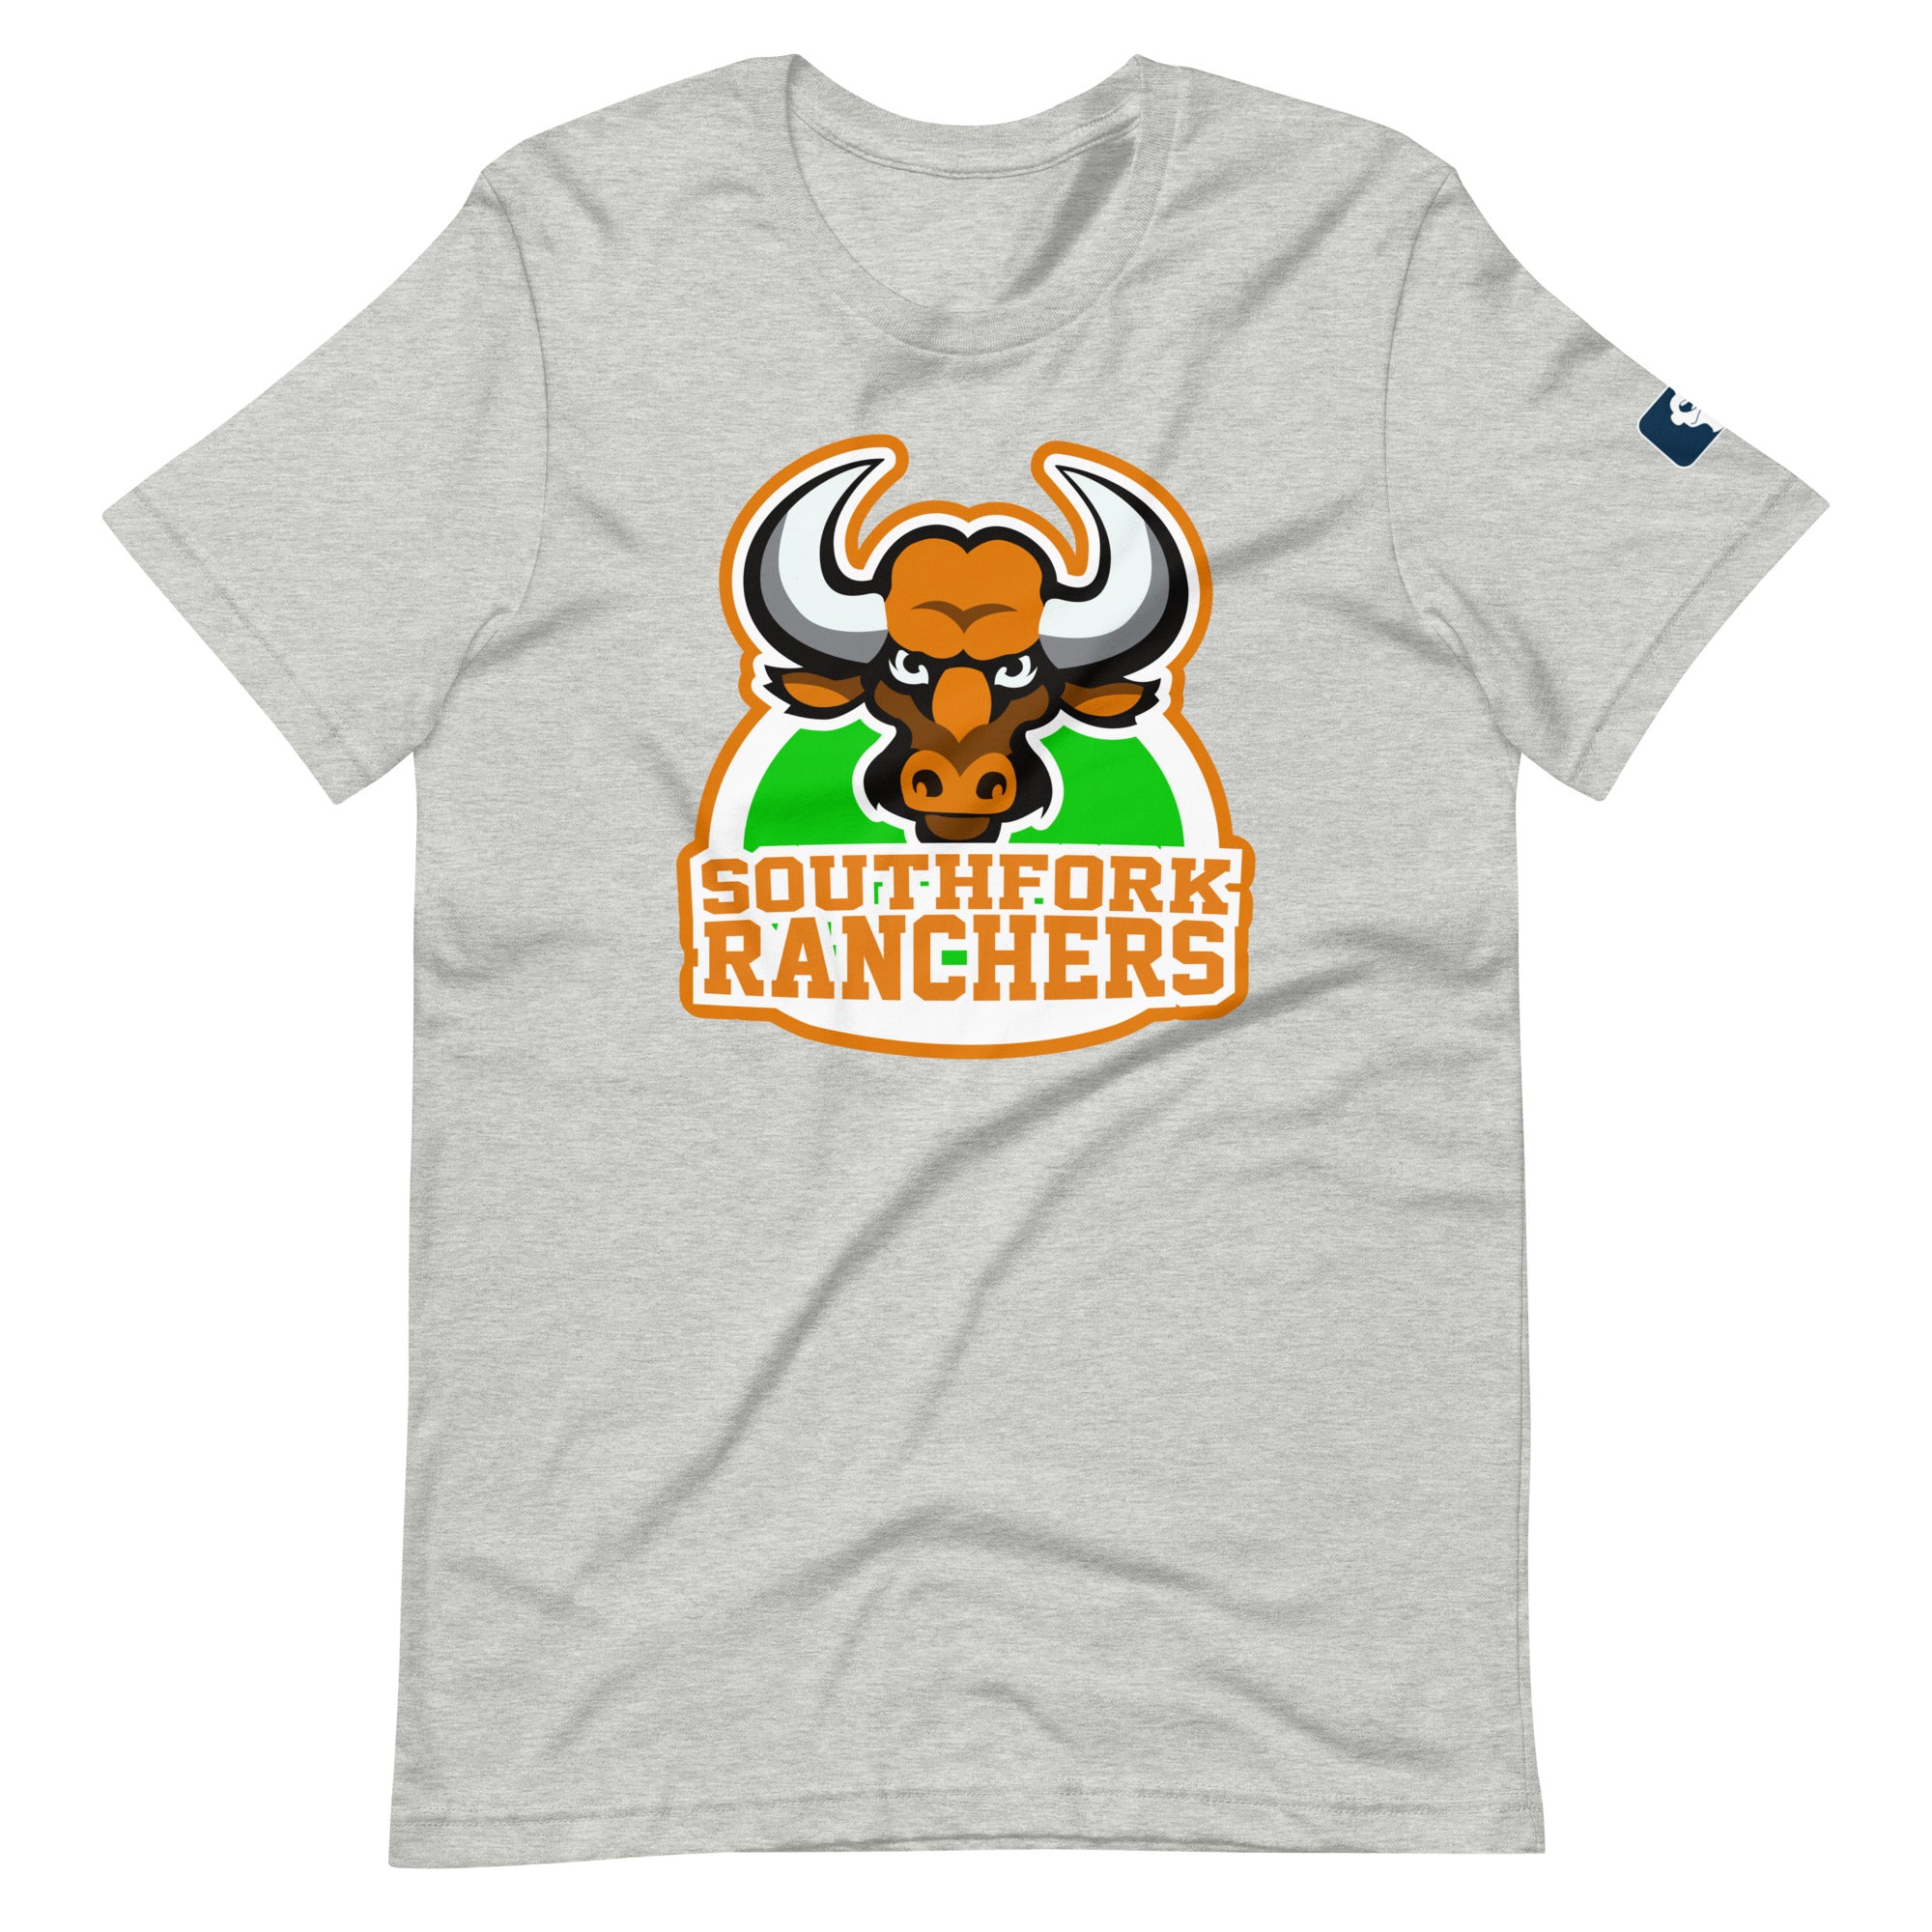 F**kface Off Southfork Ranchers T-Shirt